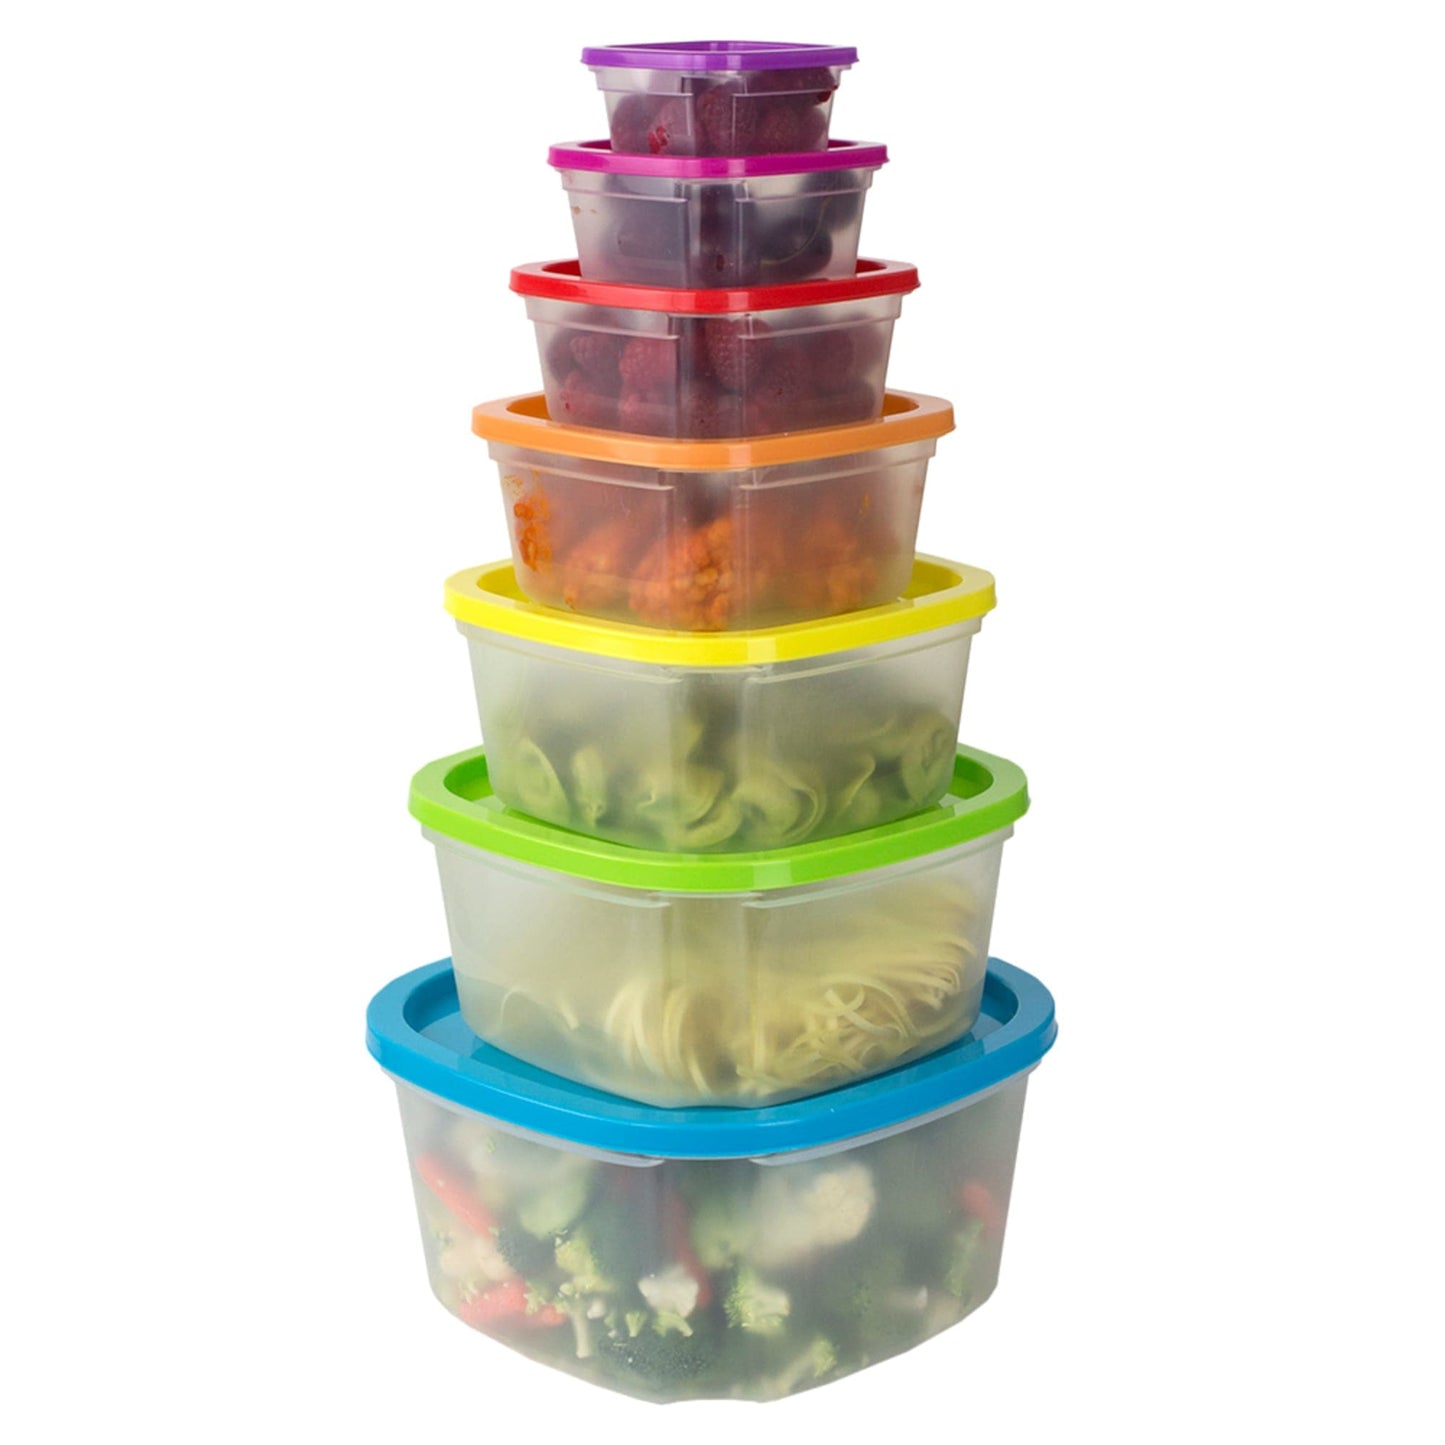 14 pc Nesting Food Storage Set 7 Containers + Lids Plastic Multi-Color Lids